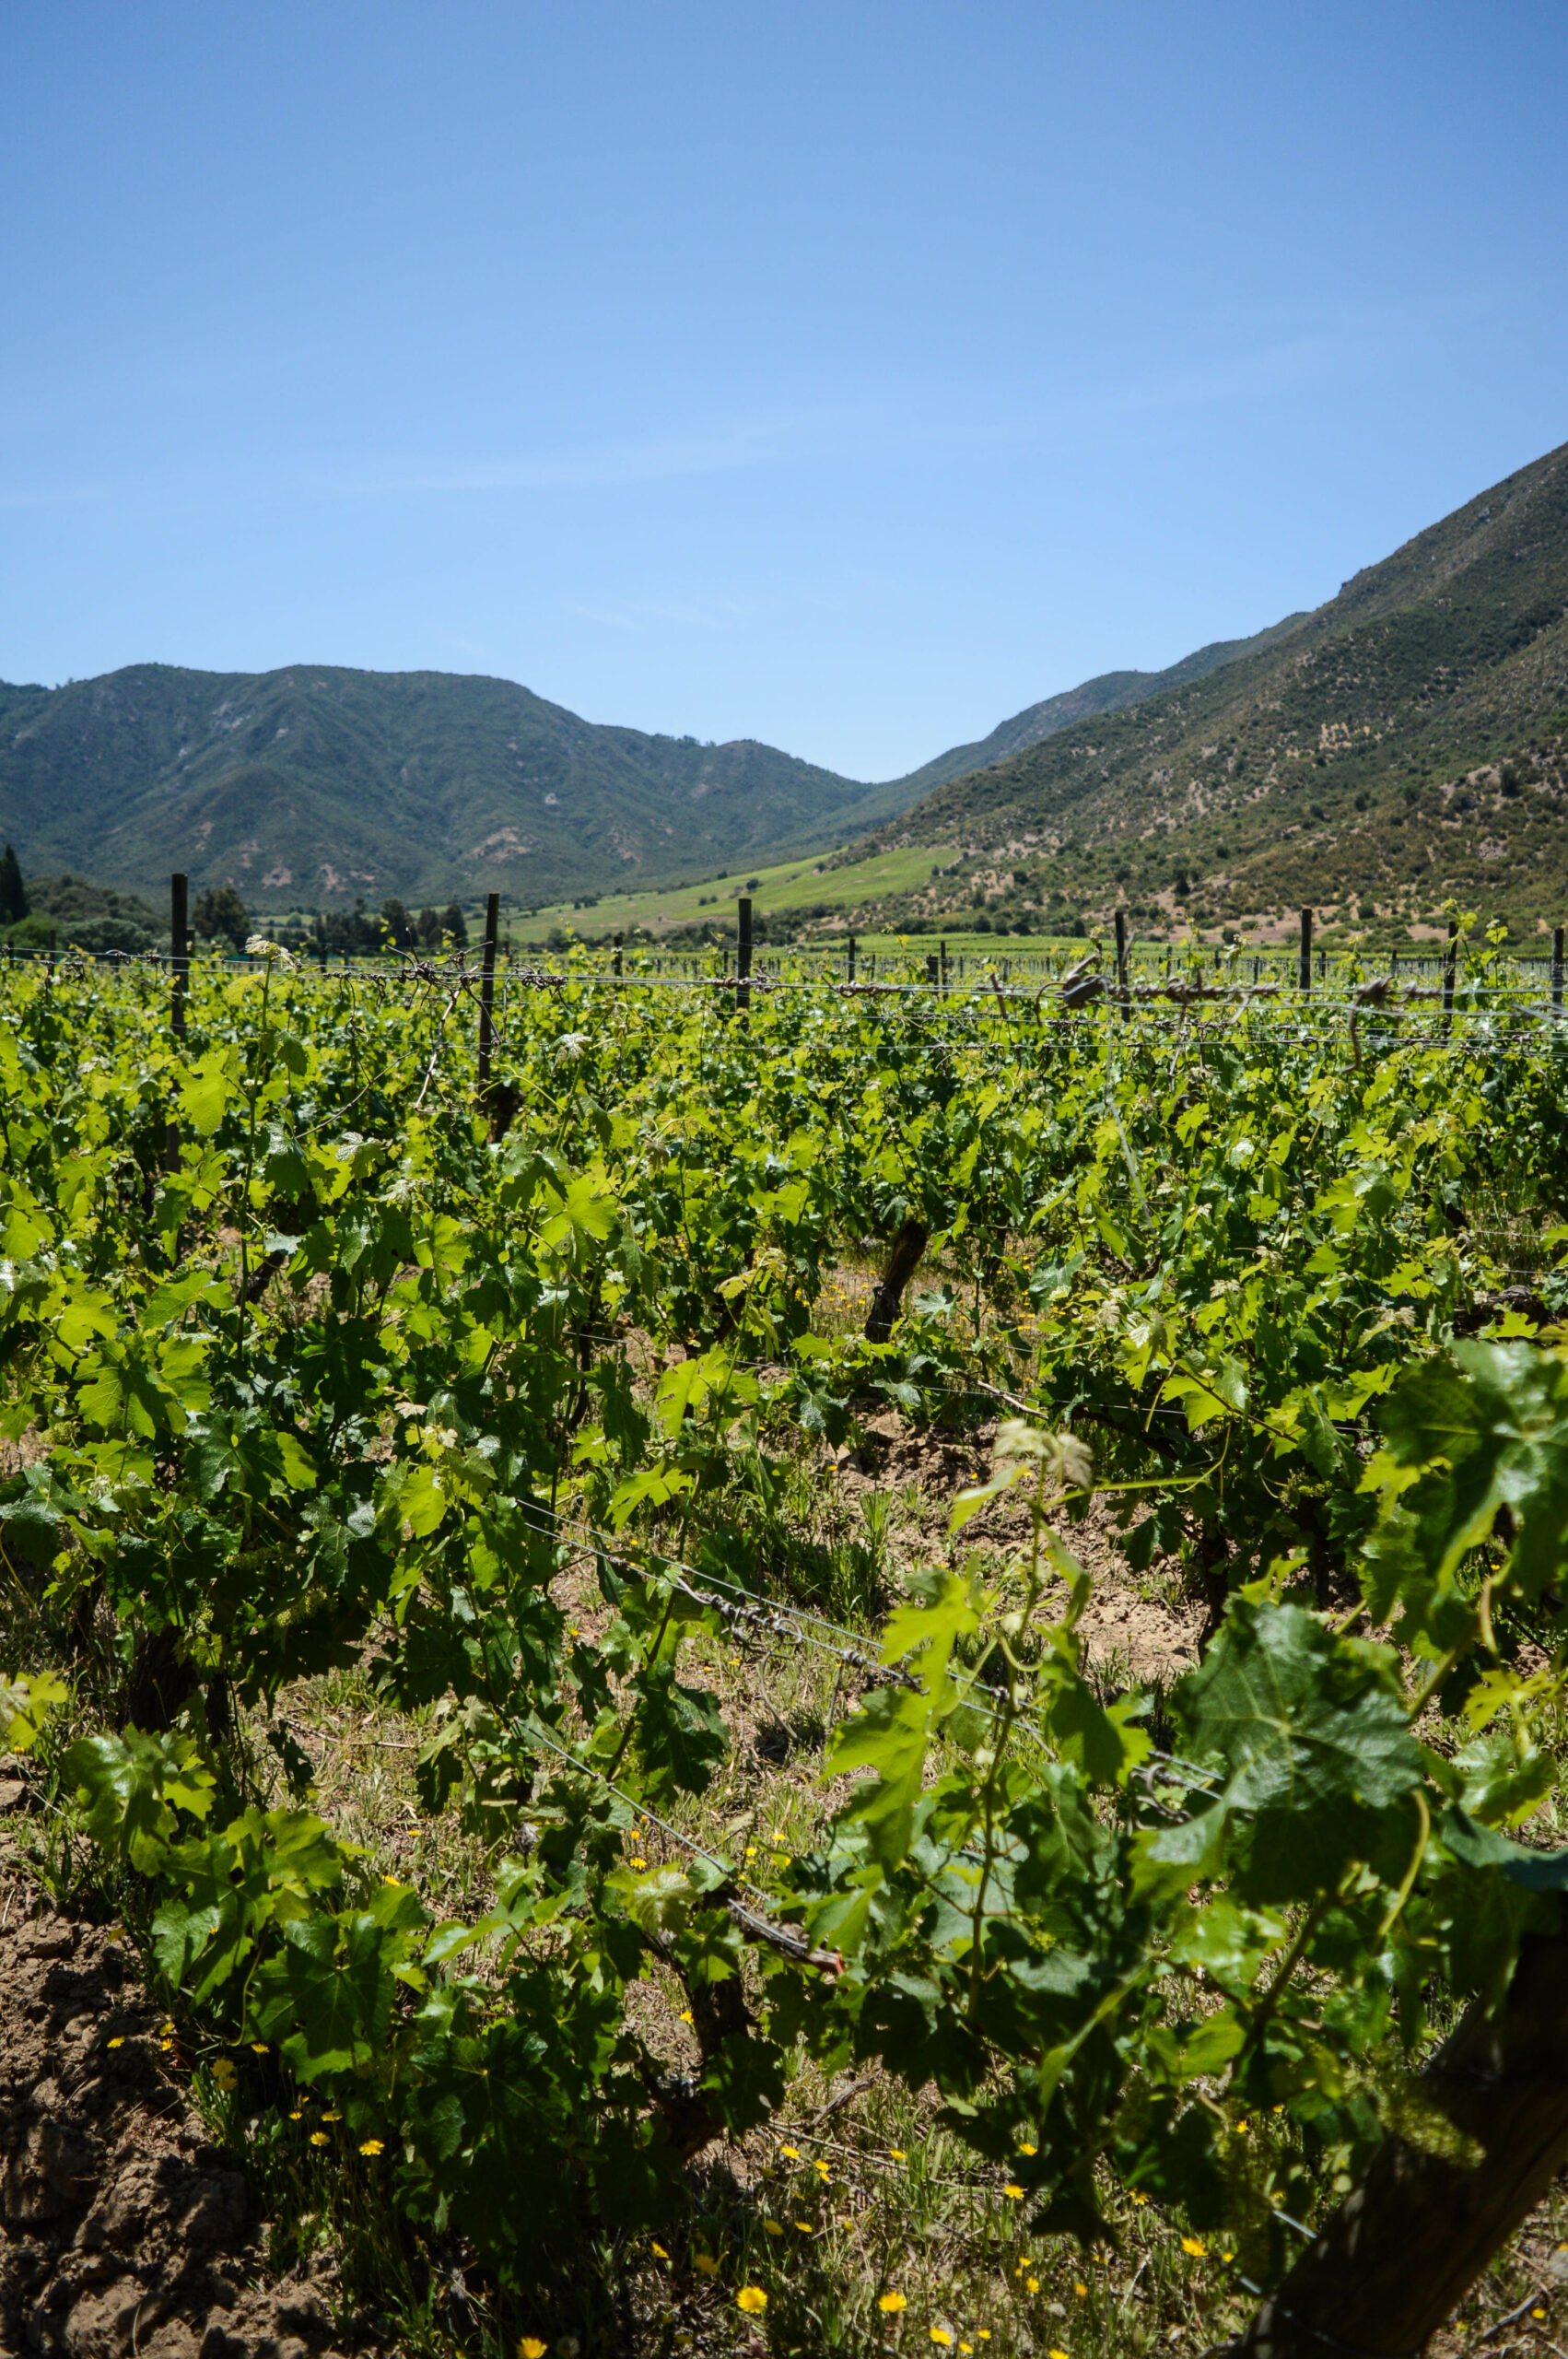 Gros plan sur des vignes de la vallée de colchagua, tout de vert vêtus, avec des montagnes et un grand ciel bleu au fond